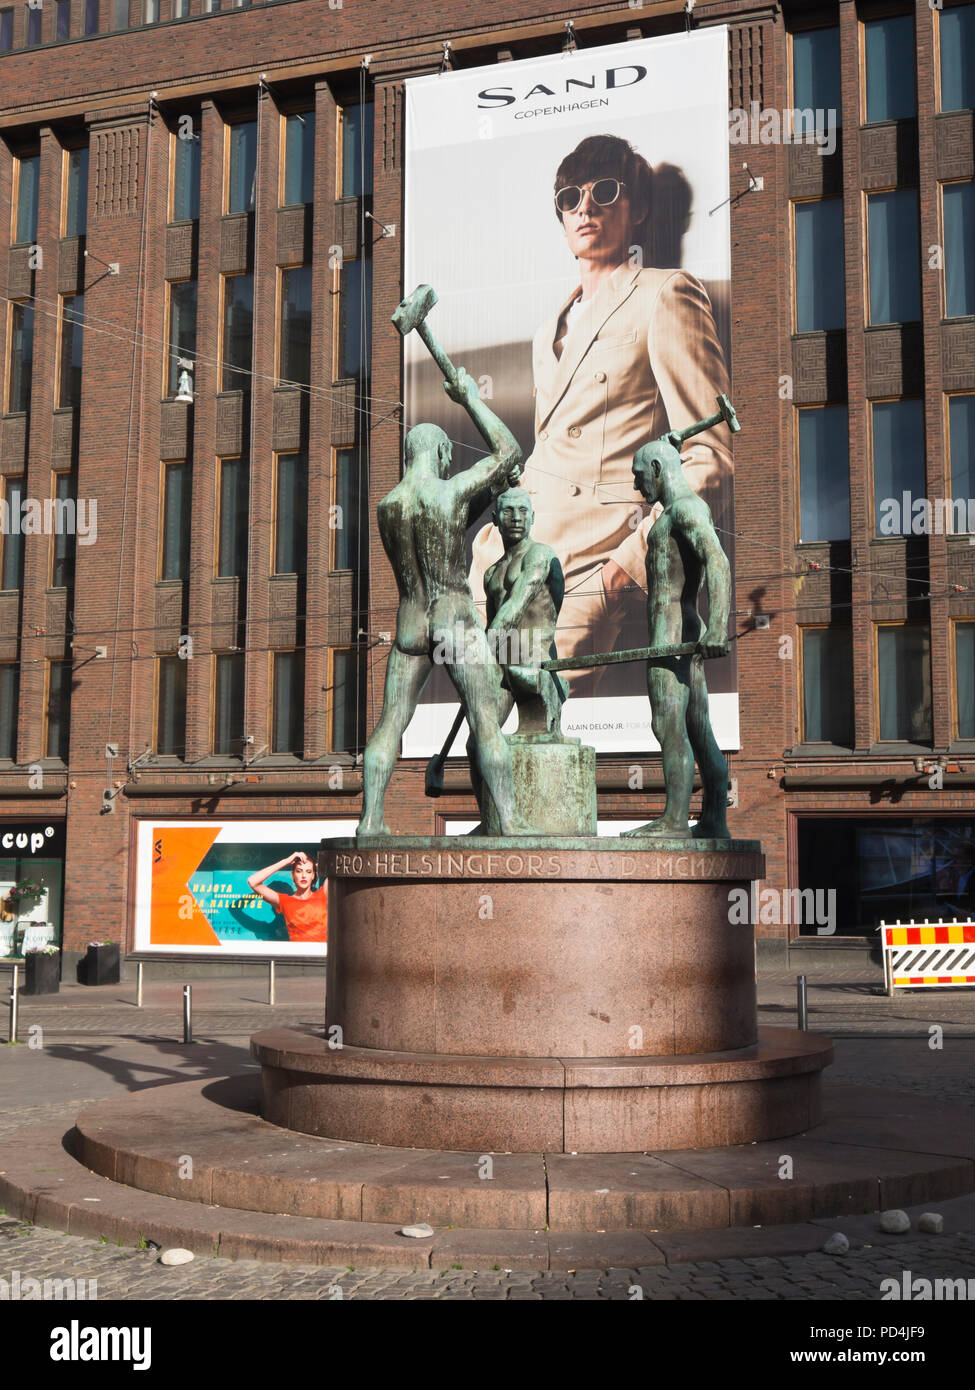 Oponerse a los estilos de vida en el centro de Helsinki, Finlandia, escultura de herreros industrial en bronce sobre un tablero gigante promoción de marca de arena Foto de stock